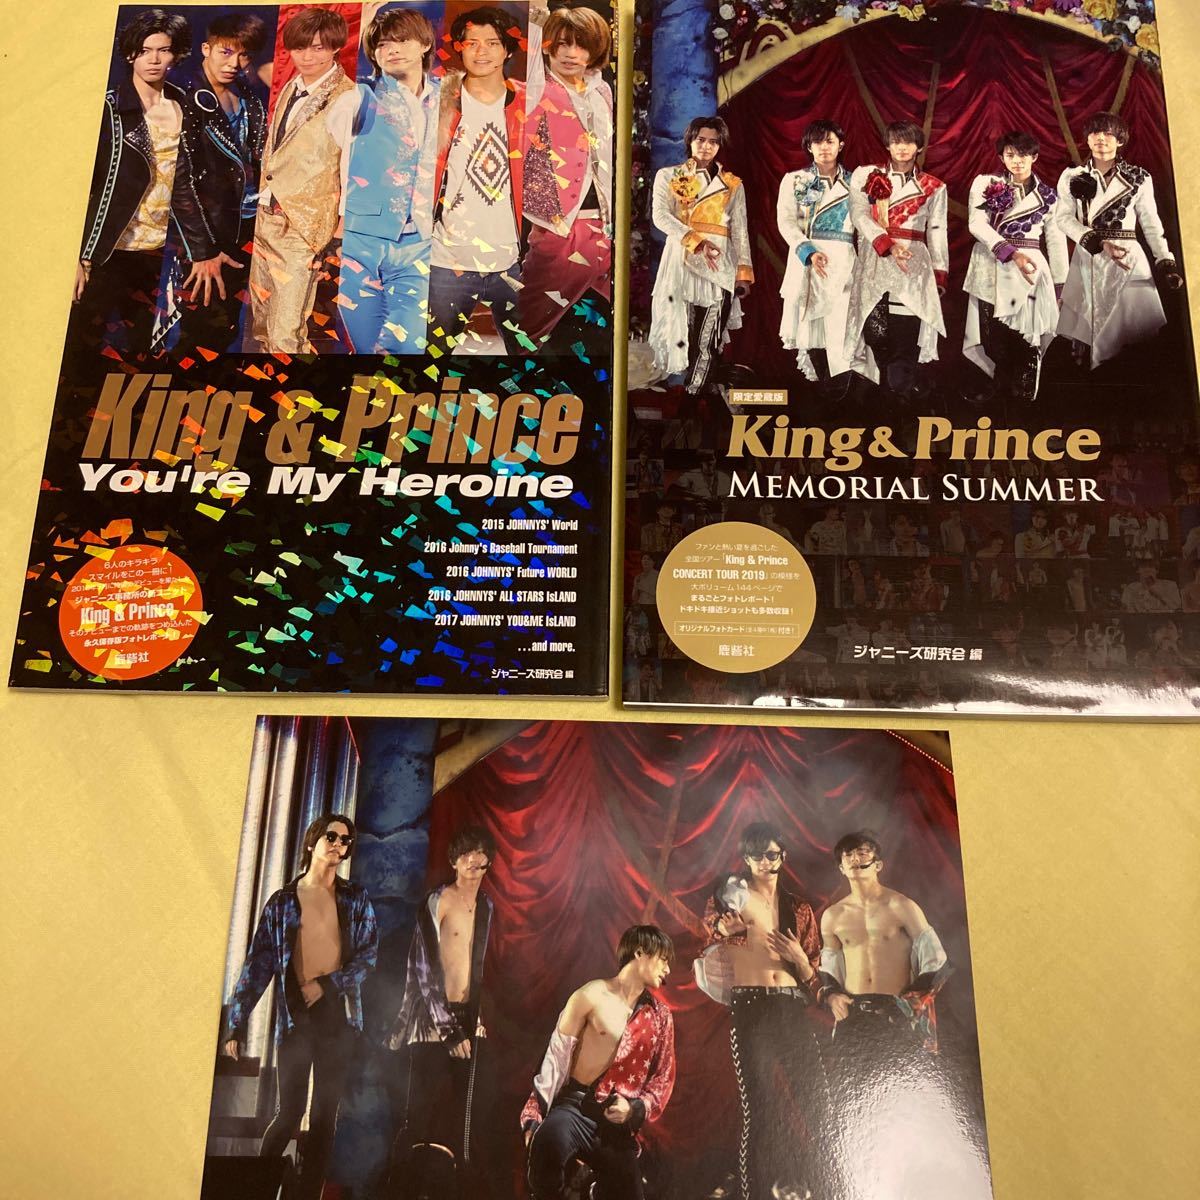 【限定愛蔵版】King & Prince Memorial Summer